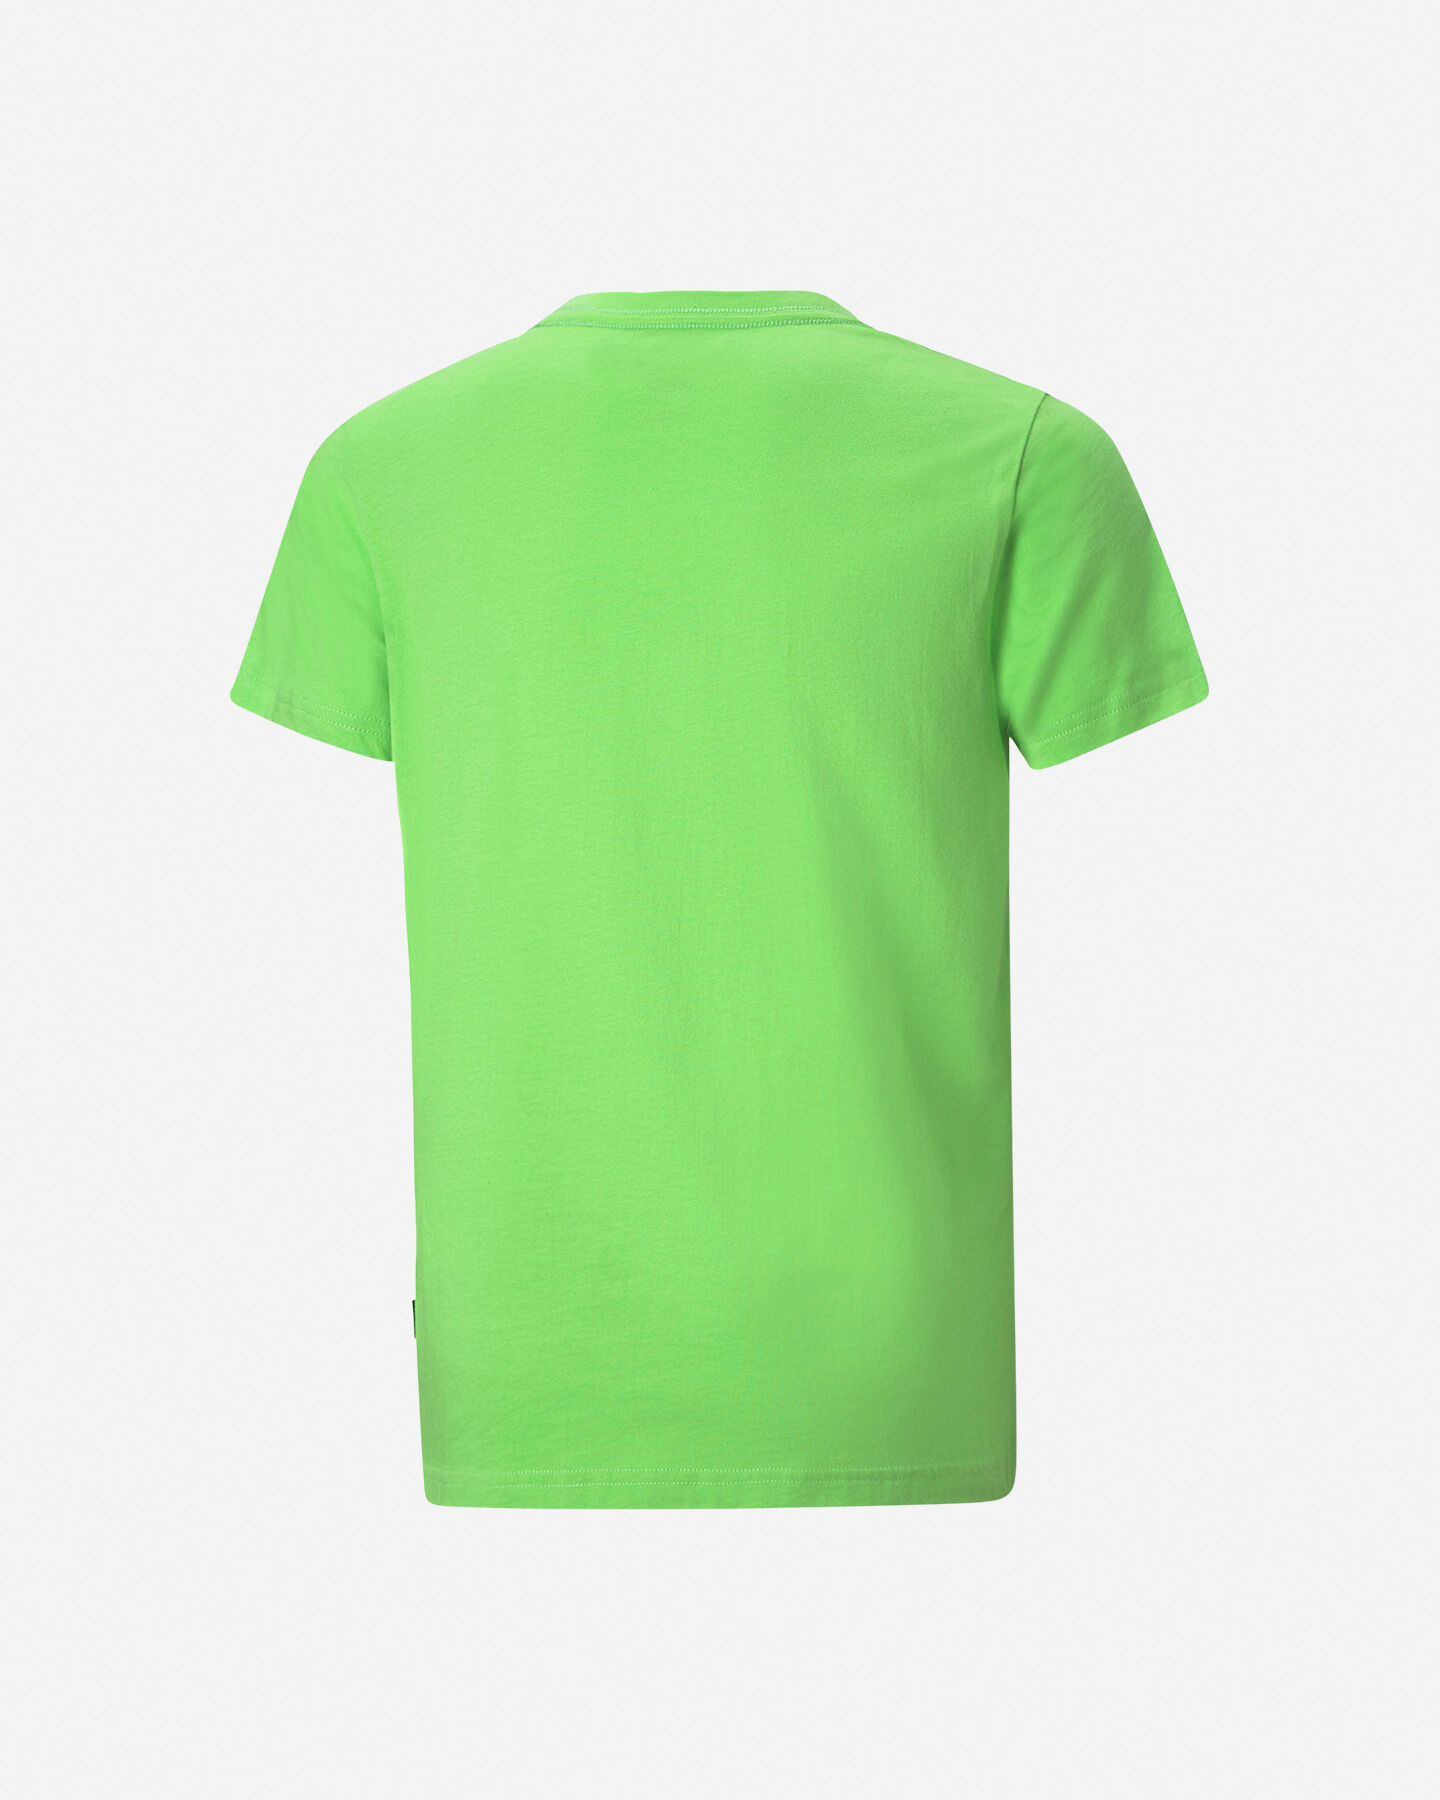  T-Shirt PUMA FLASH JR S5333999|46|104 scatto 1